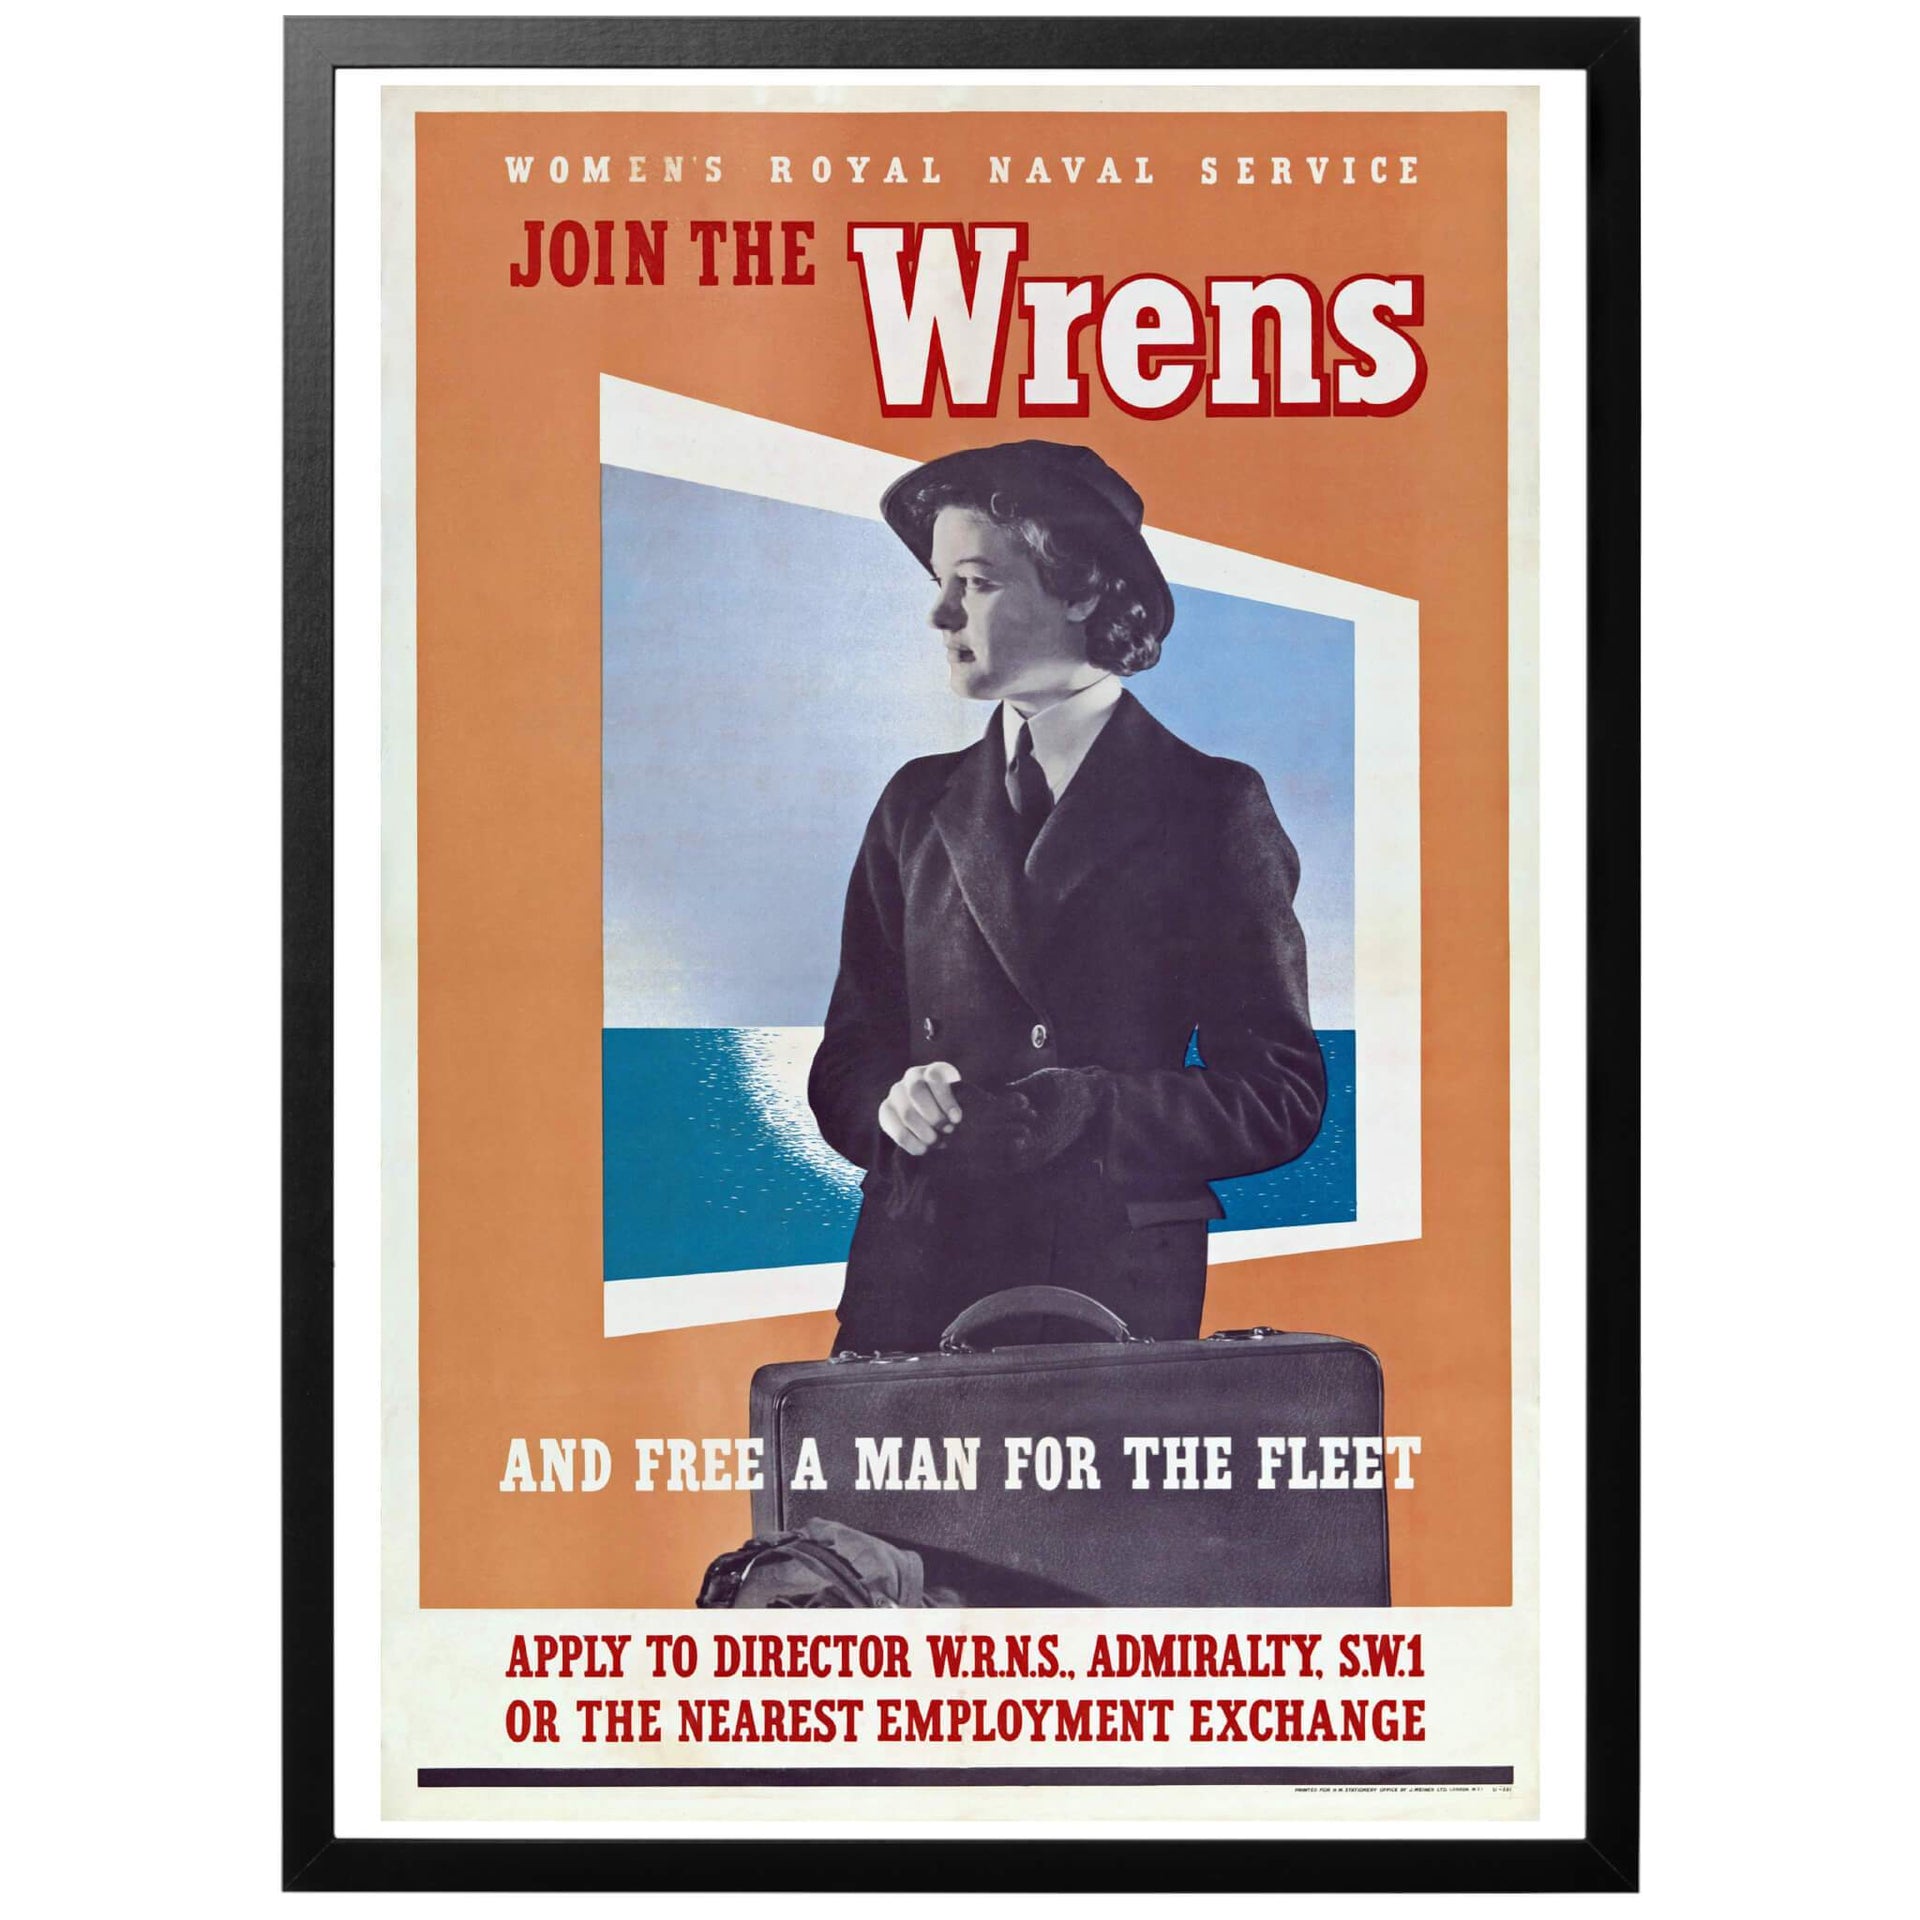 Join the Wrens and free a man for the fleet  - Anslut dig till Wrens och frigör en man till flottan" Brittisk WWII affisch. The Women's Royal Naval Service (WRENS) var den kvinnliga grenen i Royal Navy. Medlemmarna arbetade som kockar, biträden, telegrafister, elektriker och flygmekaniker.